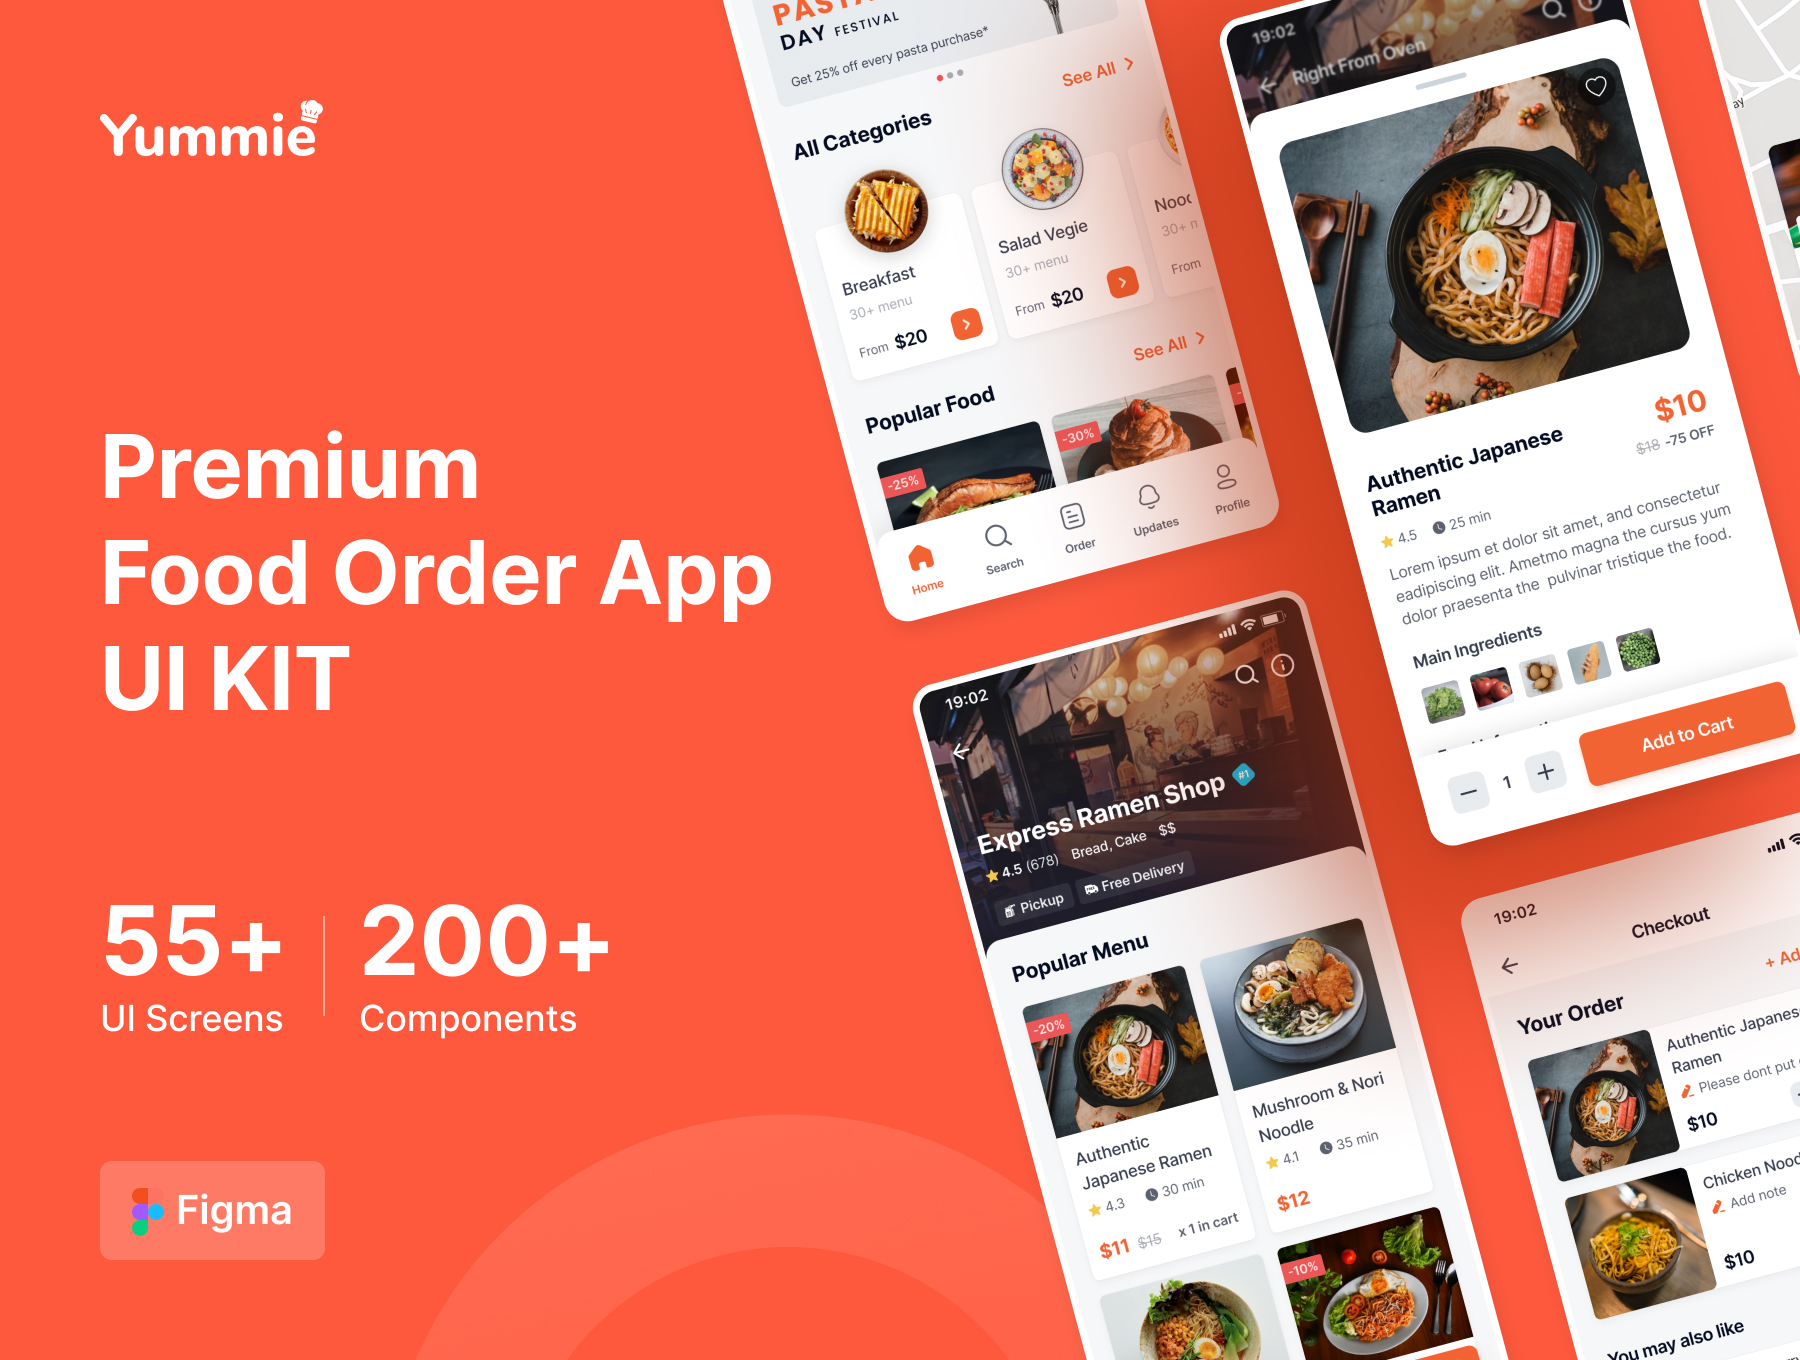 高级食品外卖点单订购应用程序UI 套件 Yummie Premium Food Order App UI Kit